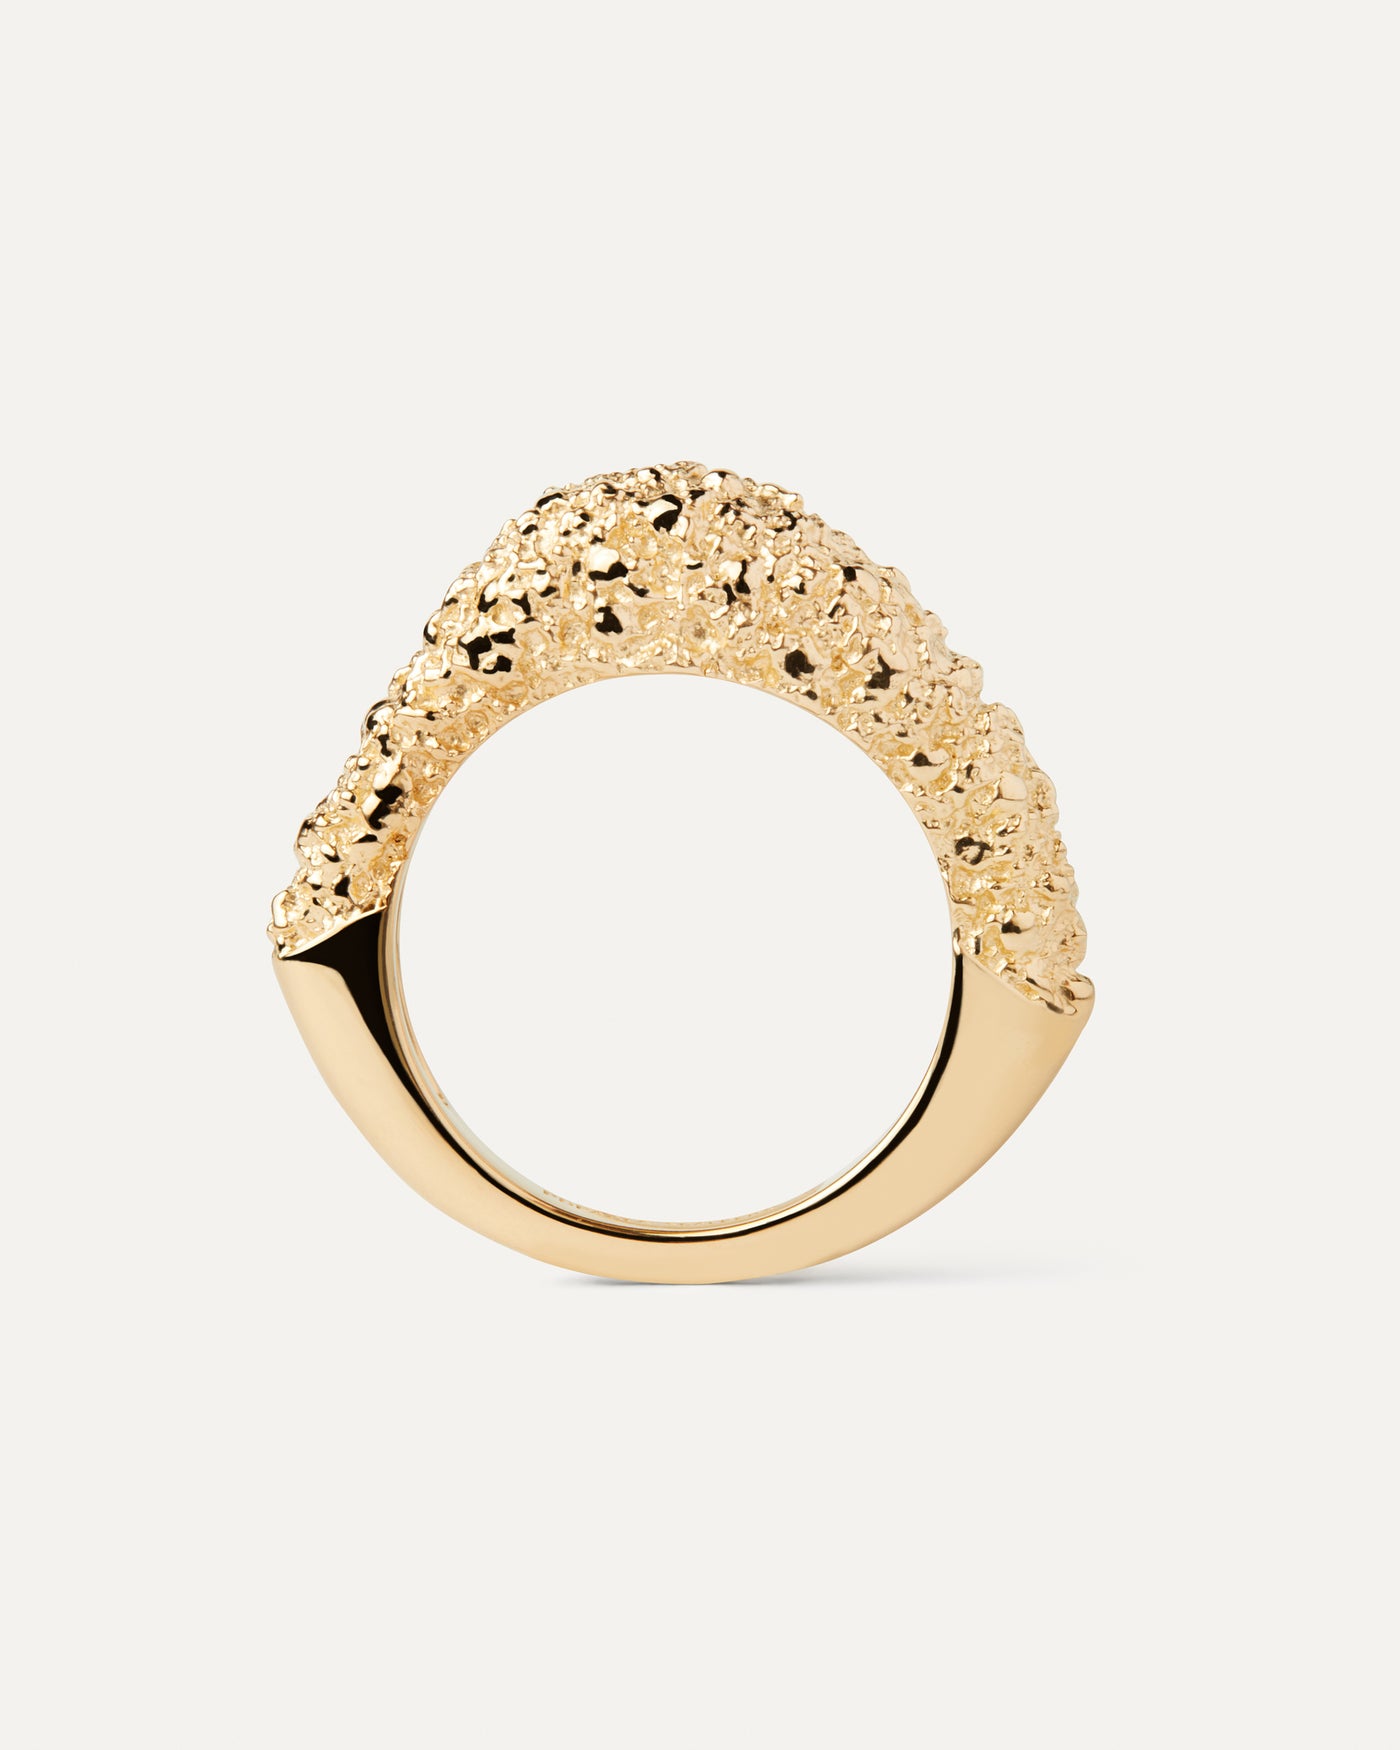 Duna Ring. Vergoldeter Ring in fließender Form mit kontrastierender geschmolzener Textur. Erhalten Sie die neuesten Produkte von PDPAOLA. Geben Sie Ihre Bestellung sicher auf und erhalten Sie diesen Bestseller.